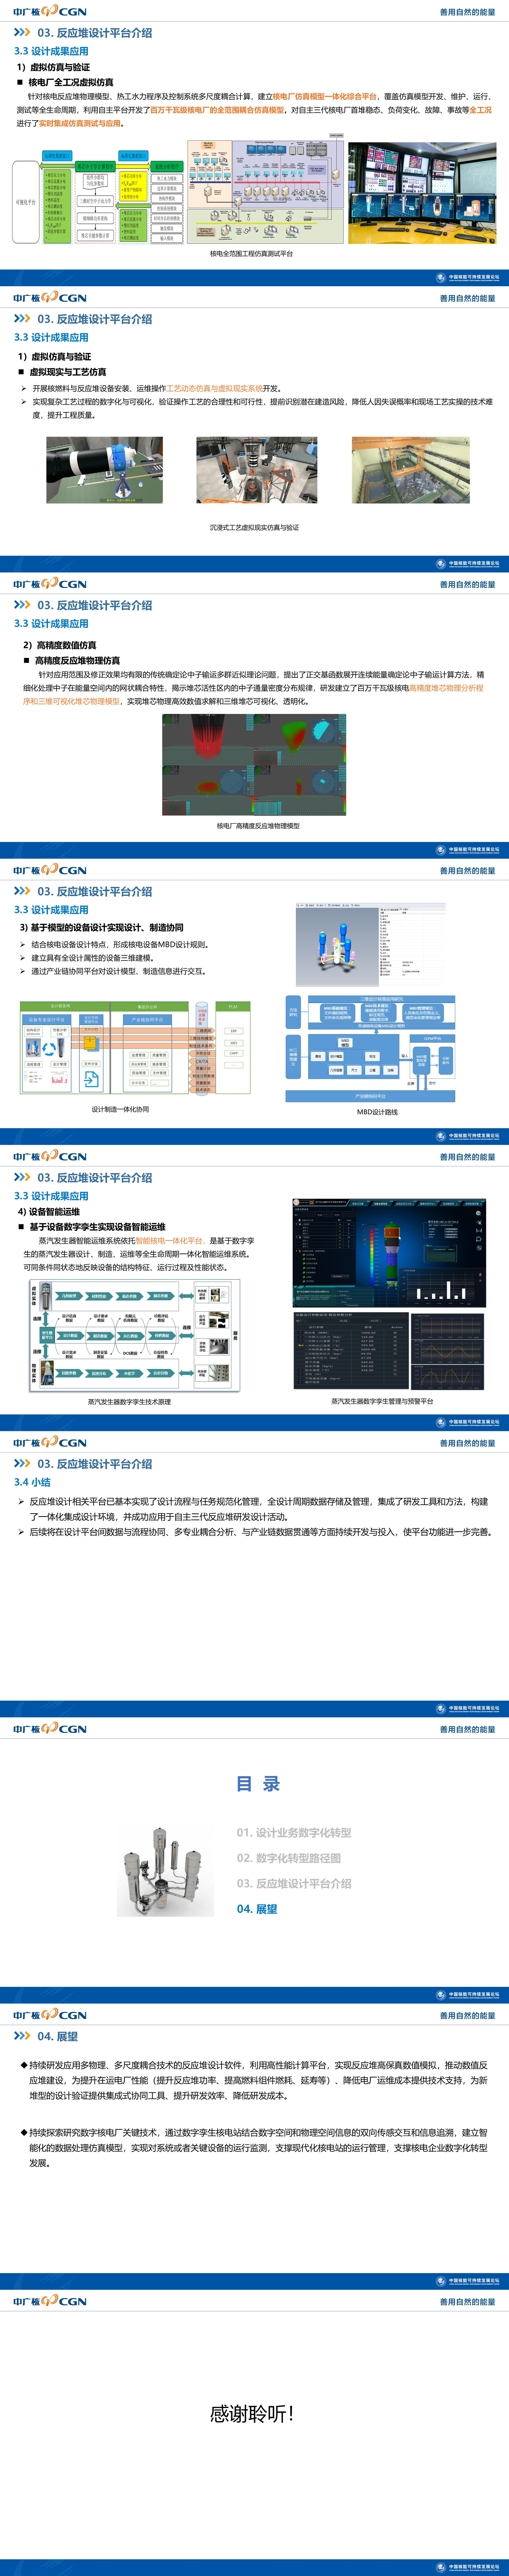 5、刘勇-数字化反应堆设计平台介绍 刘勇_03.jpg